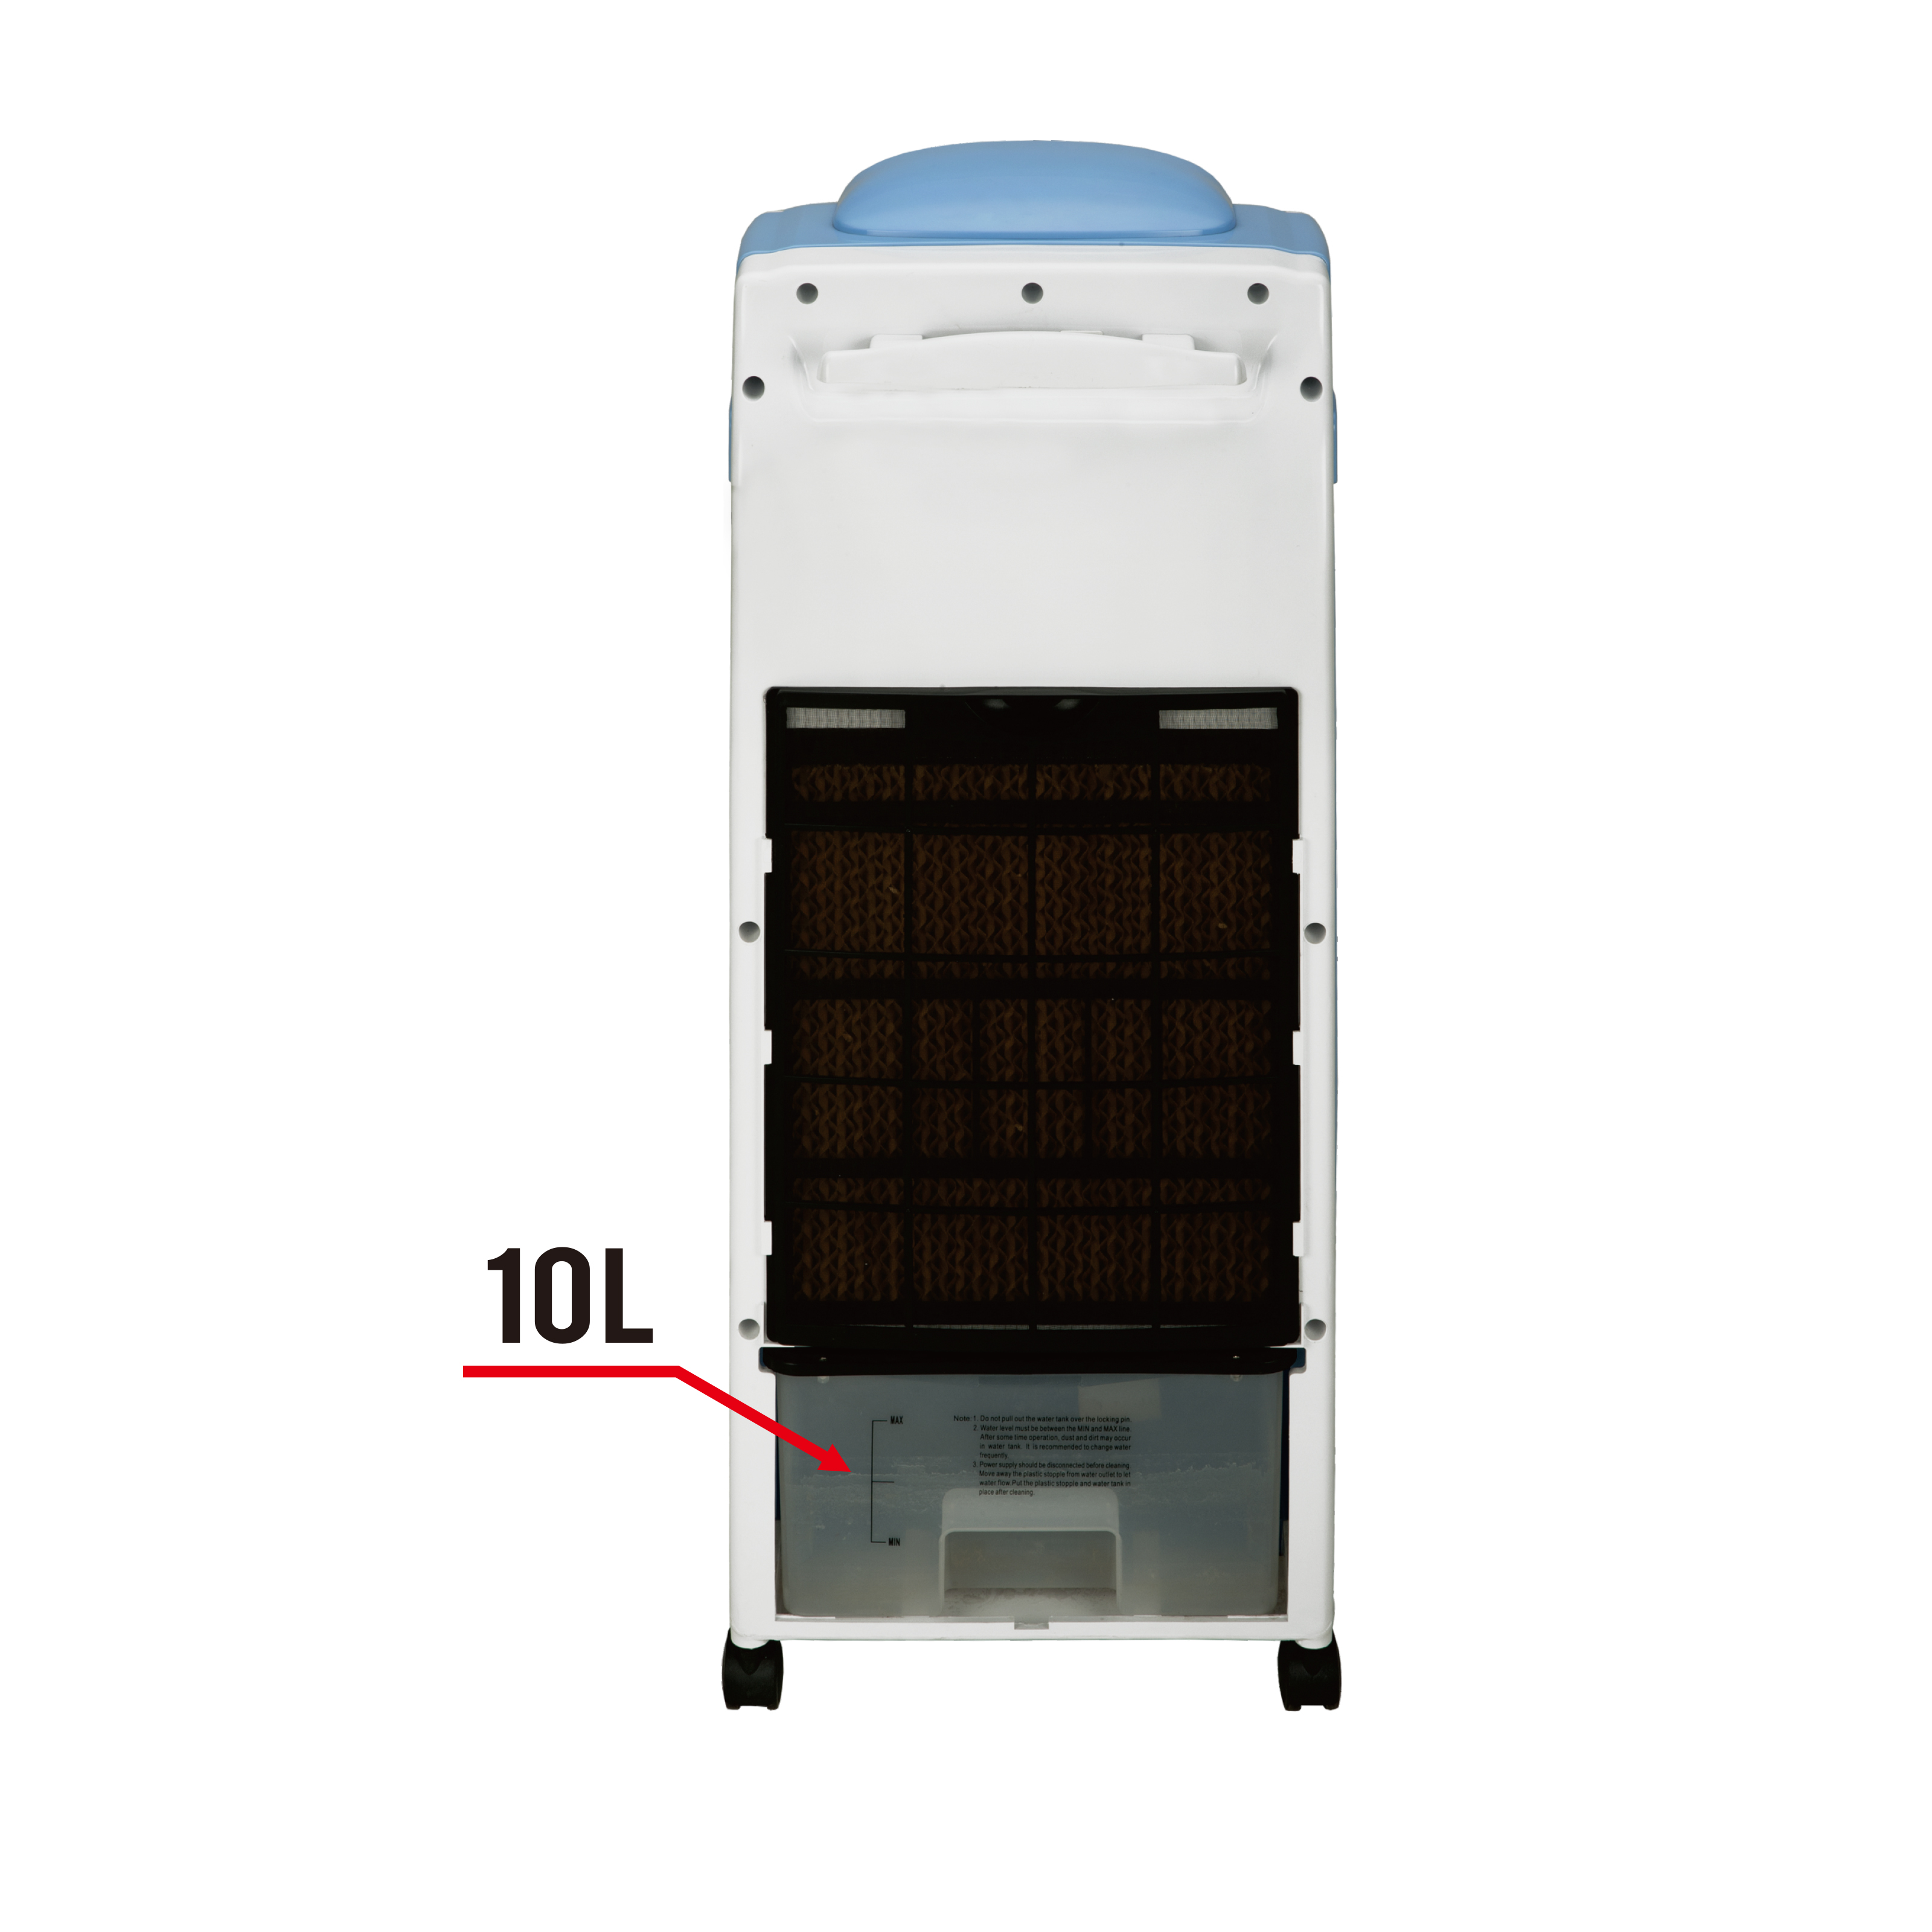 Refroidisseur d'air domestique debout au sol avec télécommande intérieure 10L